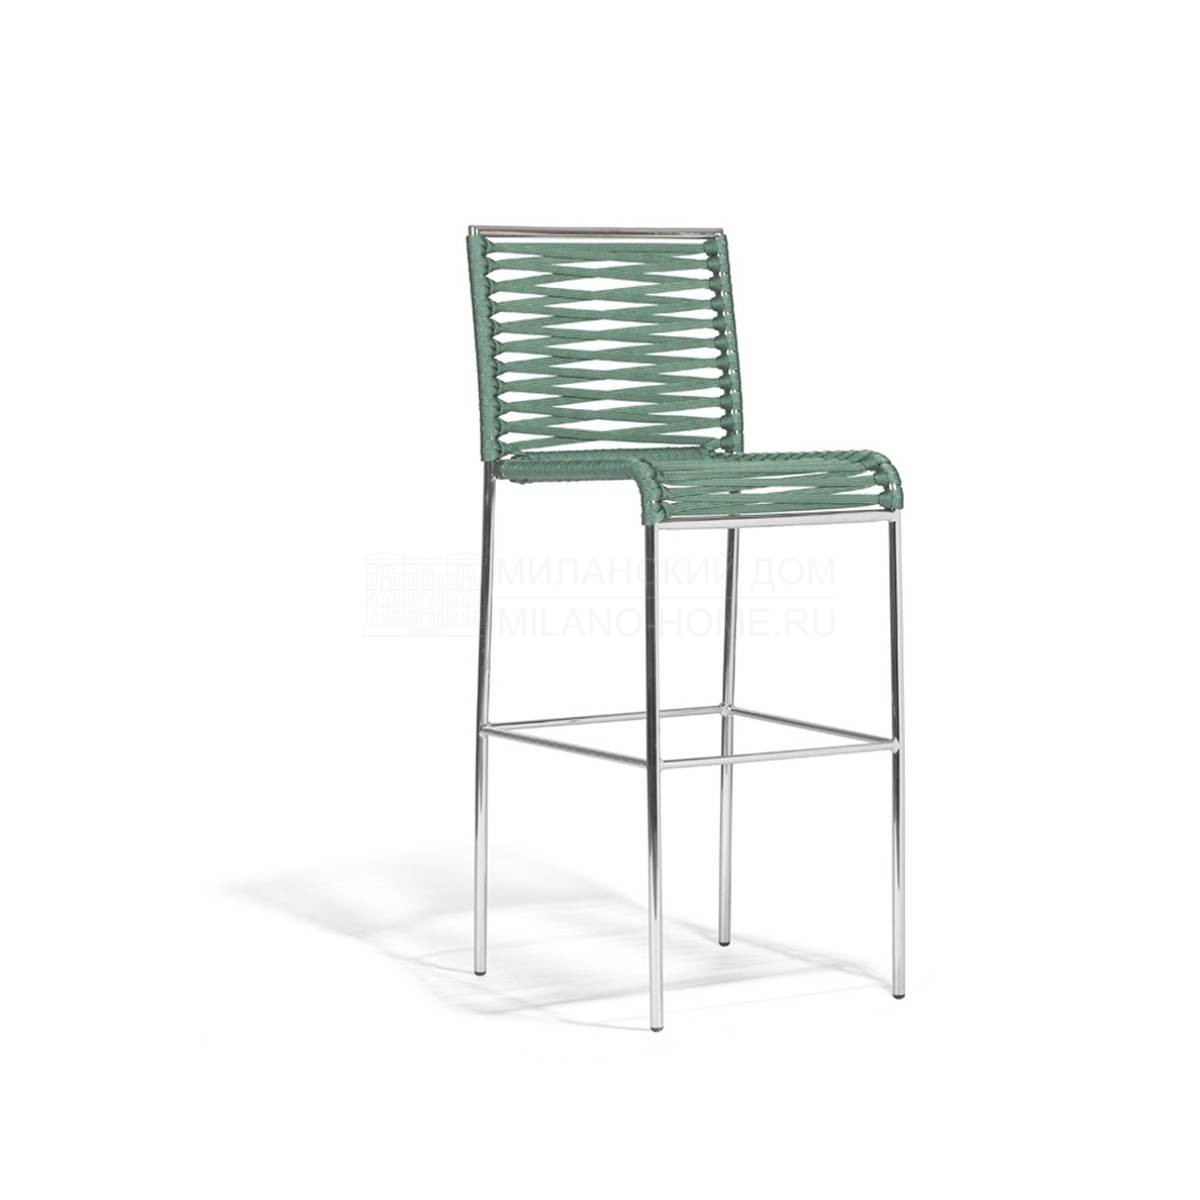 Барный стул Aria / art.864/A из Италии фабрики POTOCCO